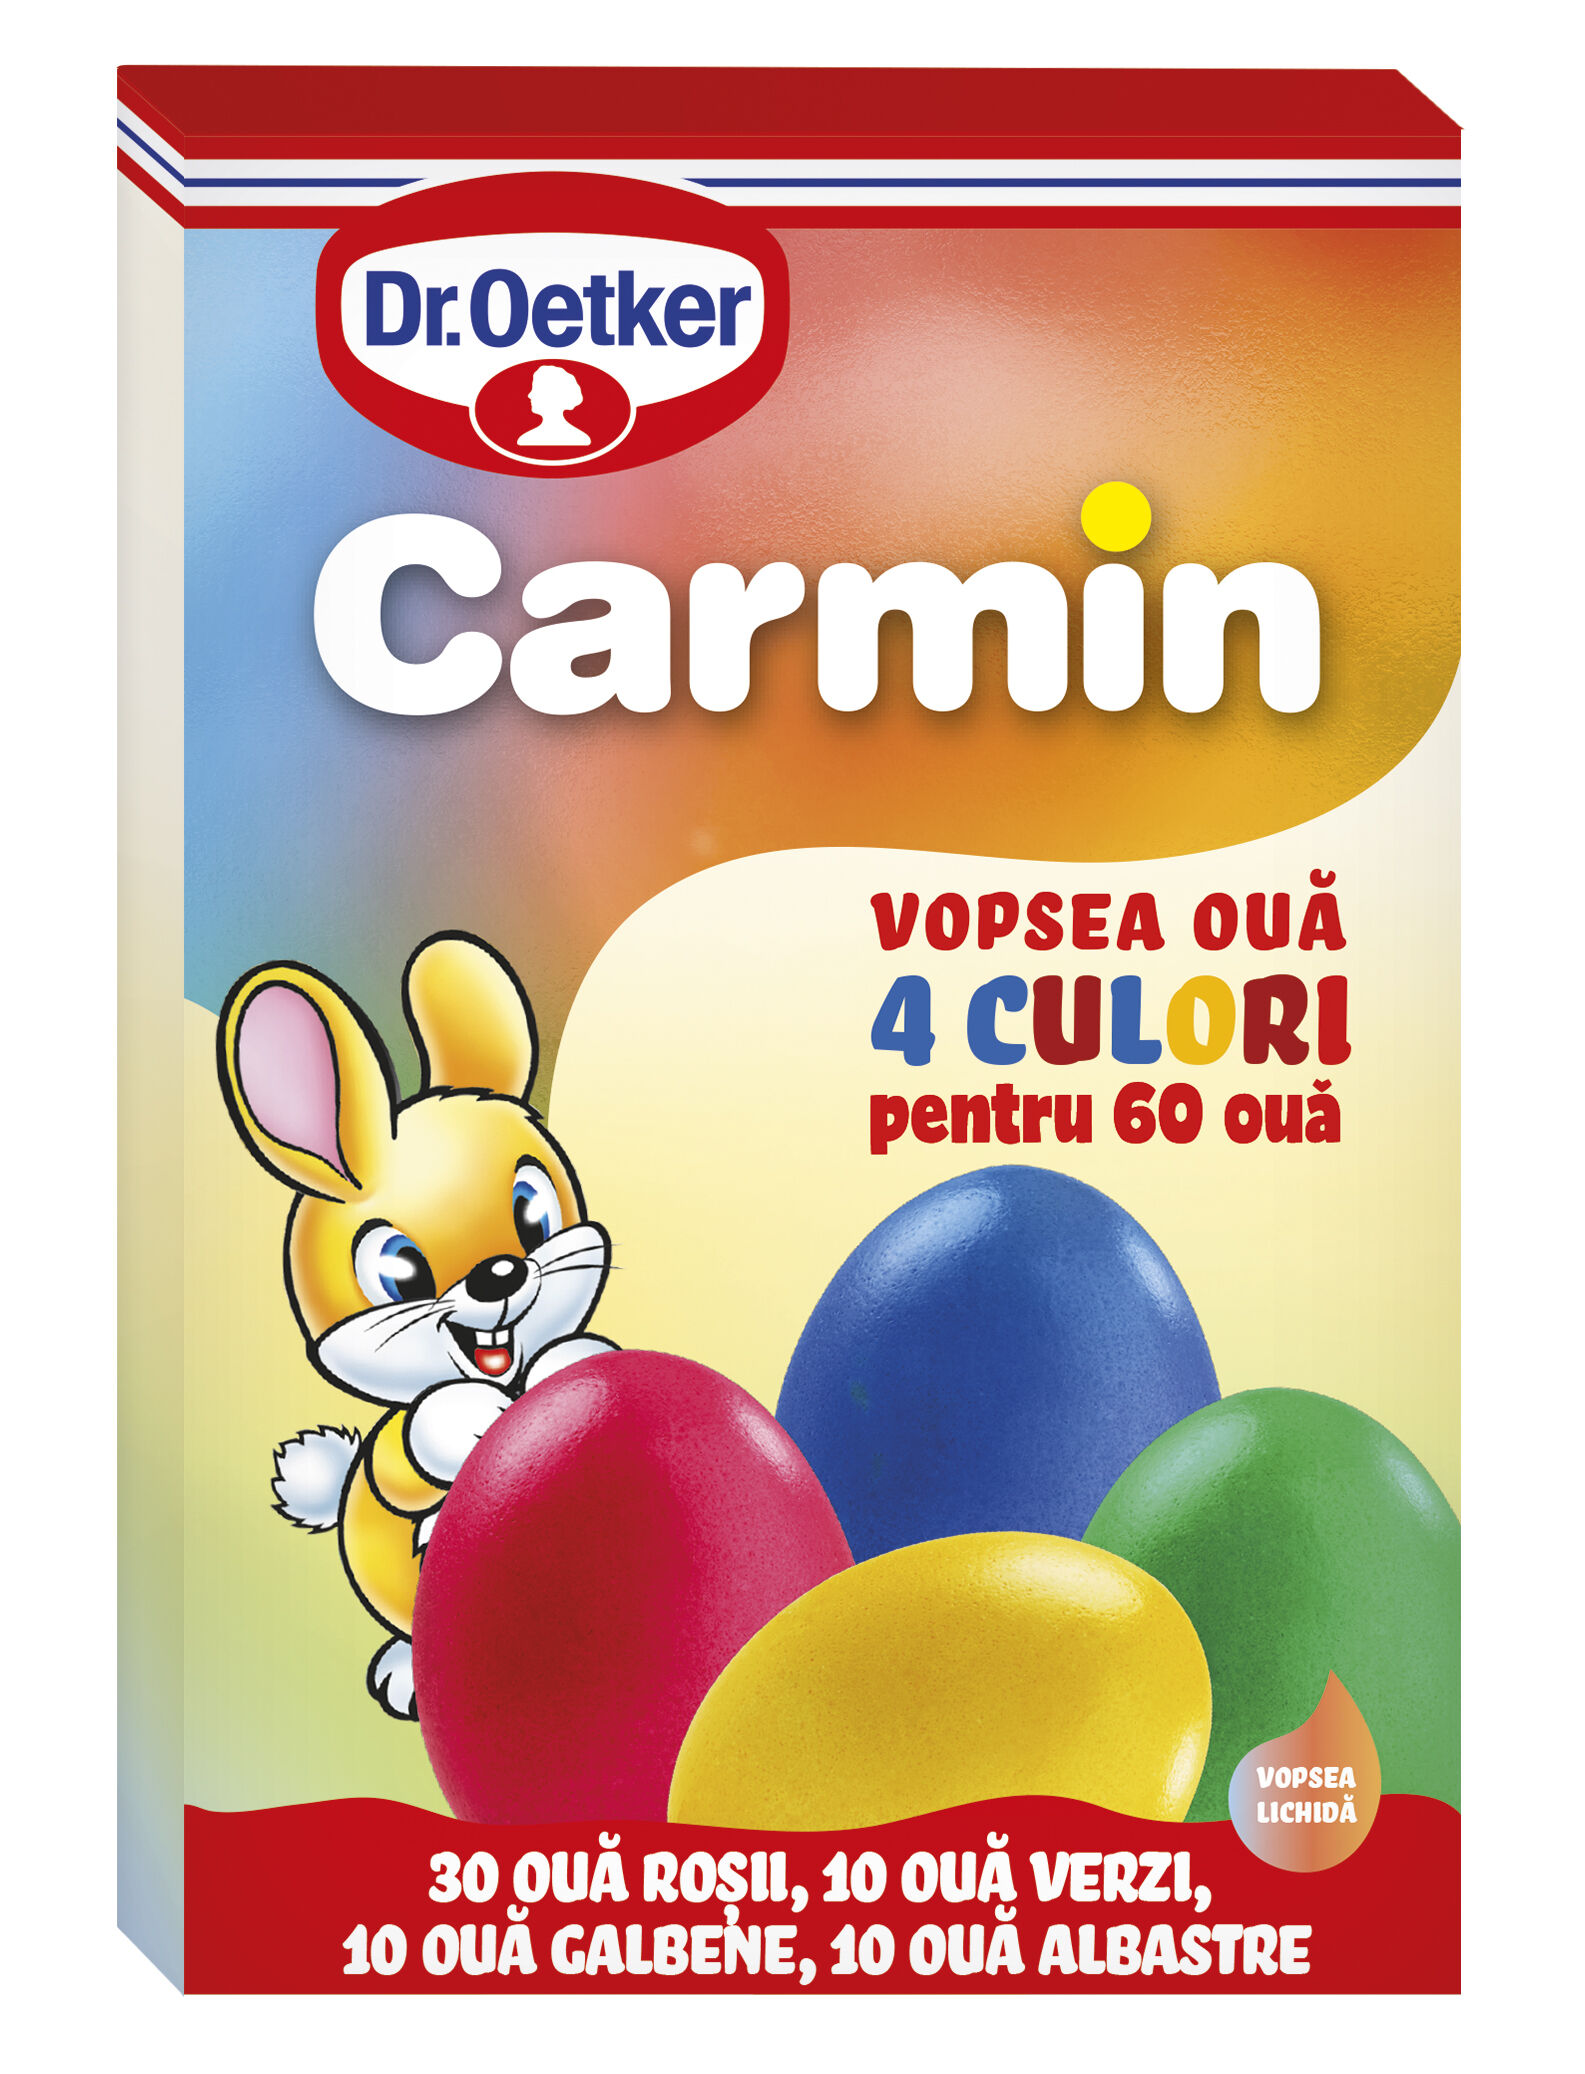 Vopsea lichida 4 culori Carmin pentru 60 oua